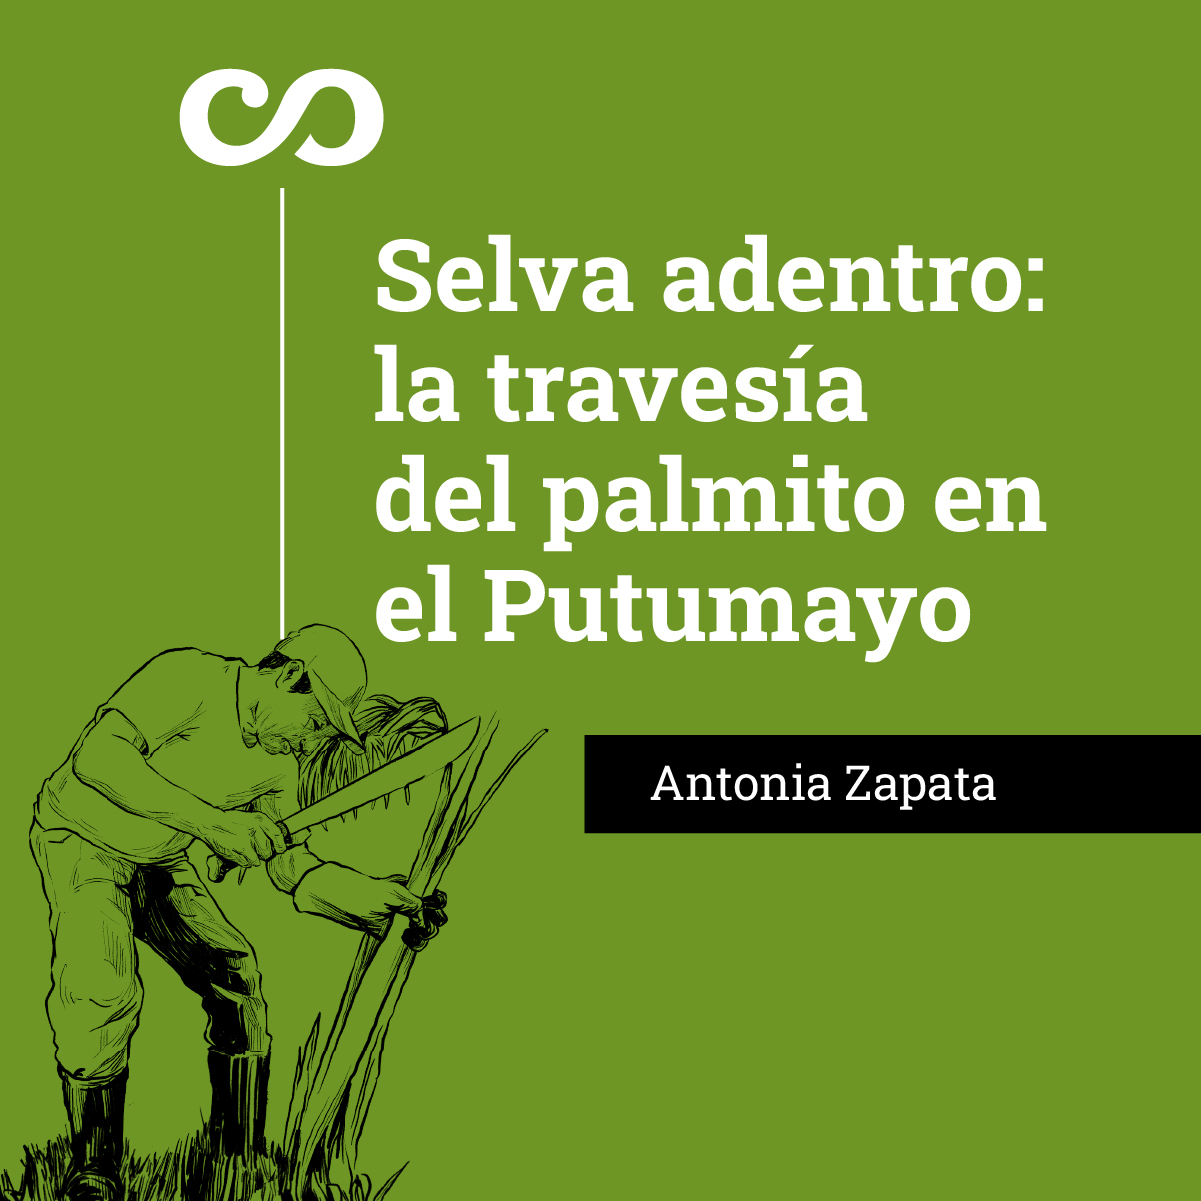 Selva adentro: la travesía del palmito en el Putumayo